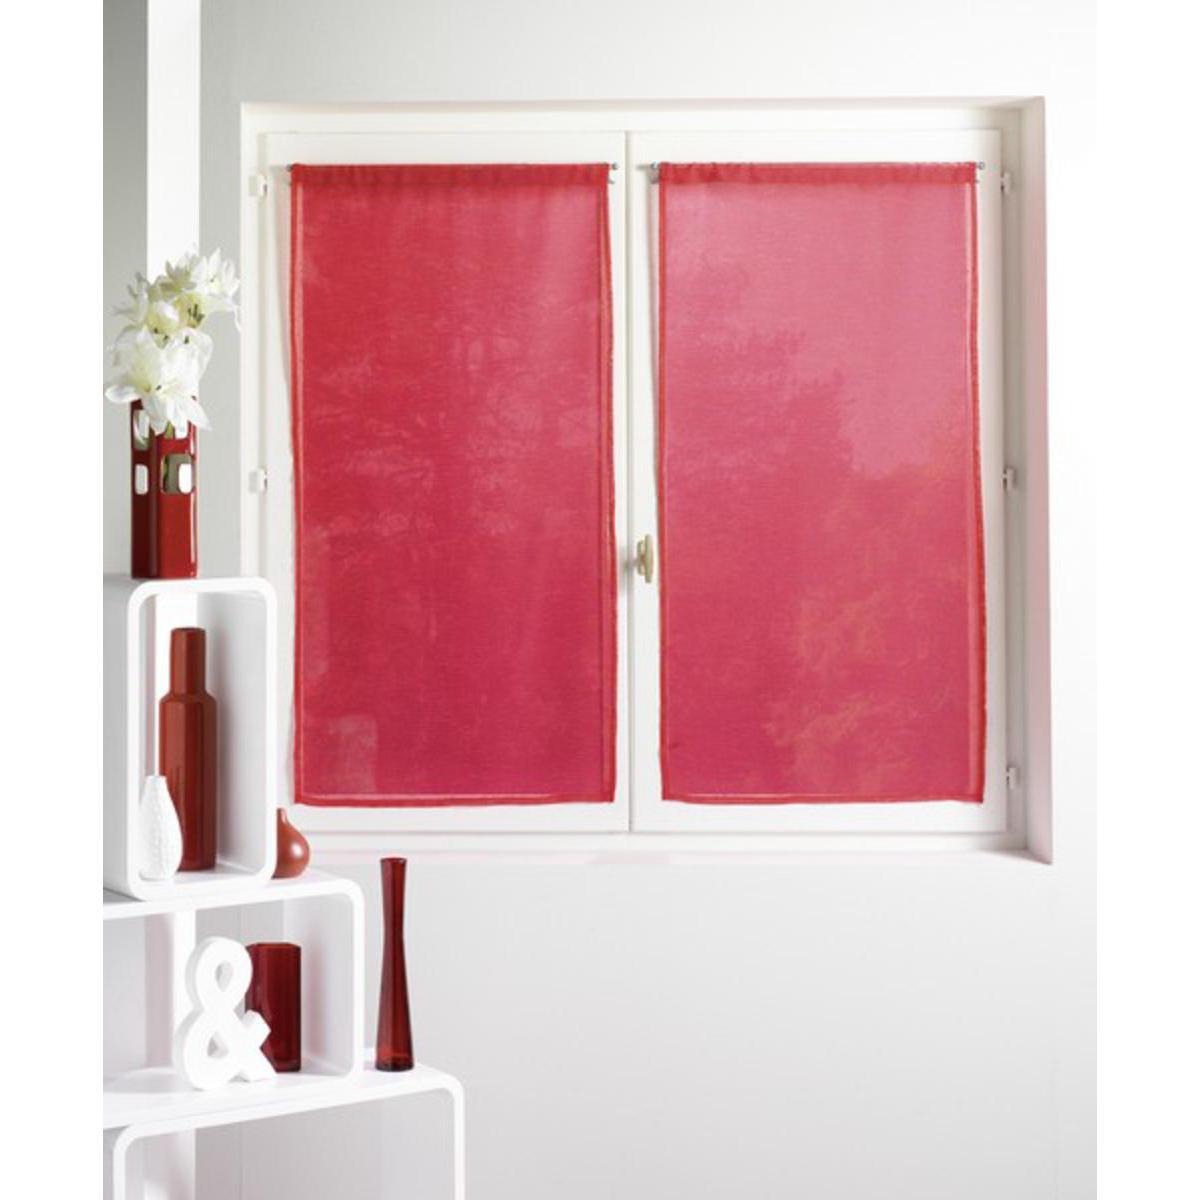 Paire de vitrages Alibi en polyester - 60 x 90 cm  - Rouge cerise